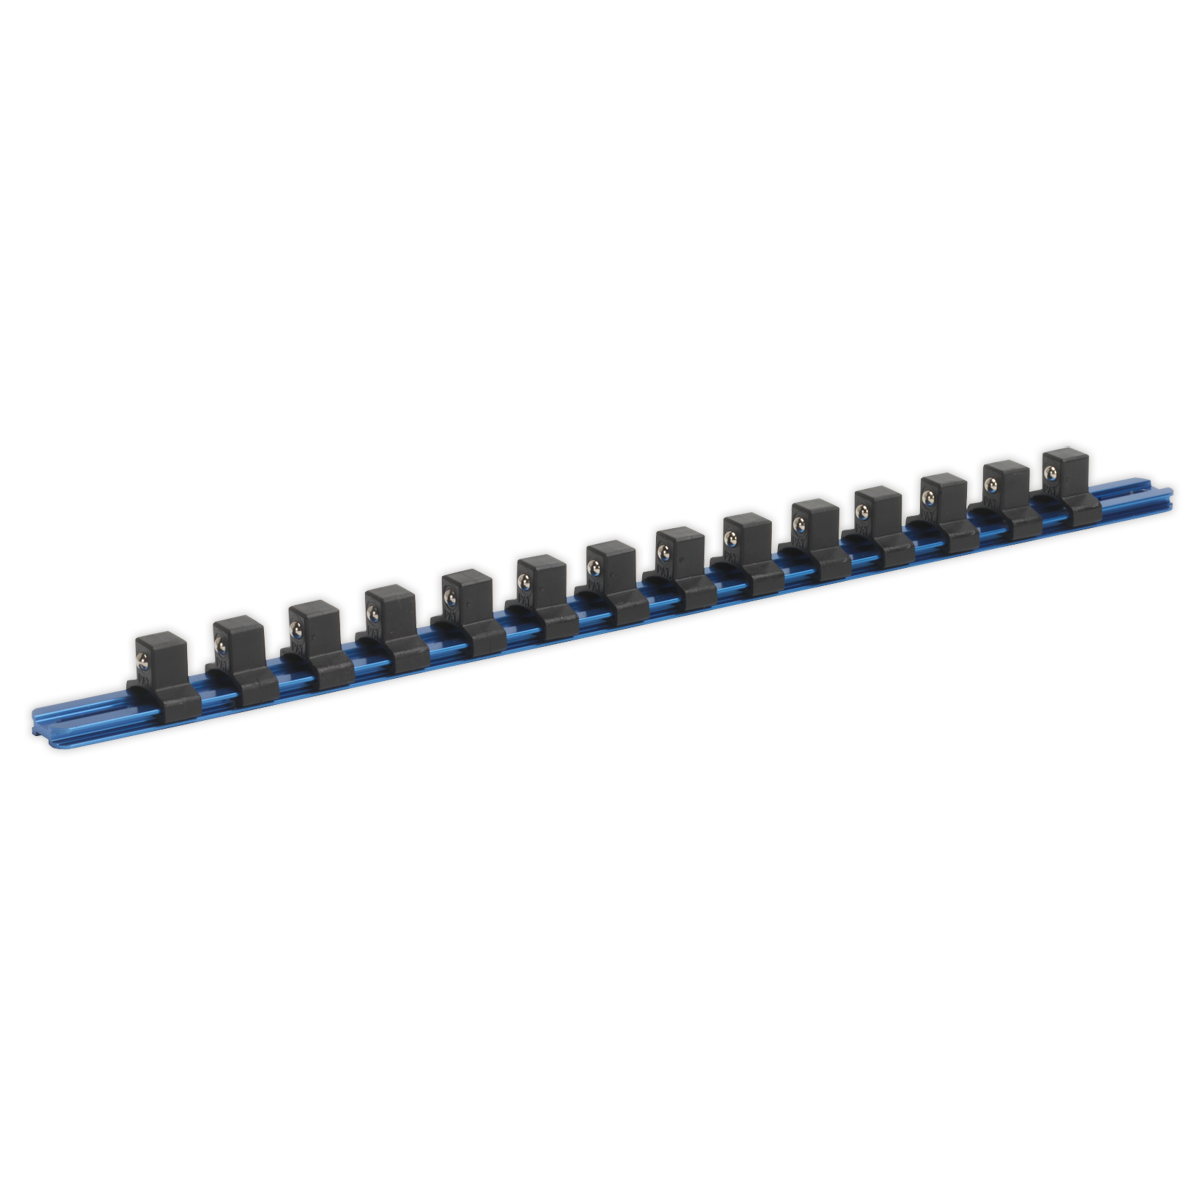 Sealey Socket Retaining Rail with 14 Clips Aluminium 1/2"Sq Drive